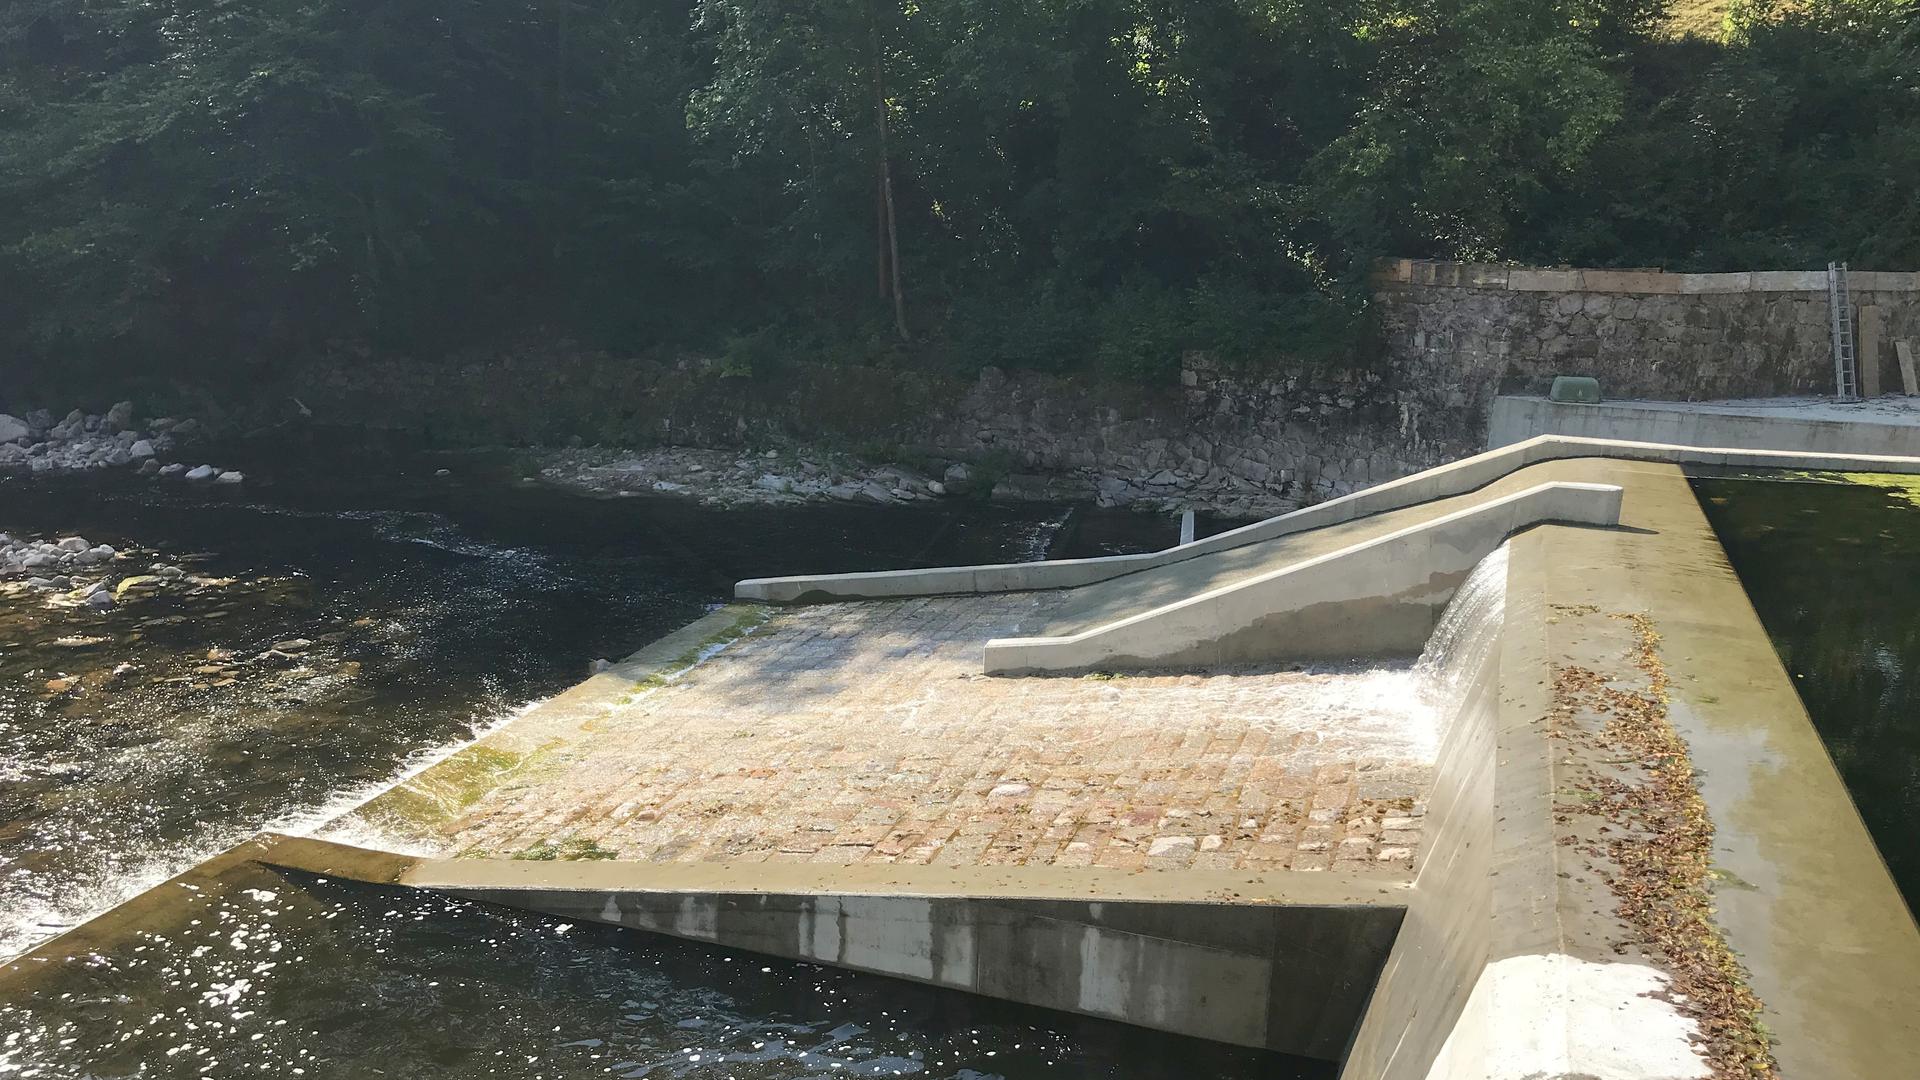 Zumindest eine Option: Sofern der Wildwasserverein Schwarzwald die Haftung übernimmt, dürfen die Kanufahren künftig die neue Bootsrutsche am Stauwehr Breitwies bei Forbach benutzen. Die Betreiber des Wasserkraftwerks haben sie vorsorglich mit eingebaut.